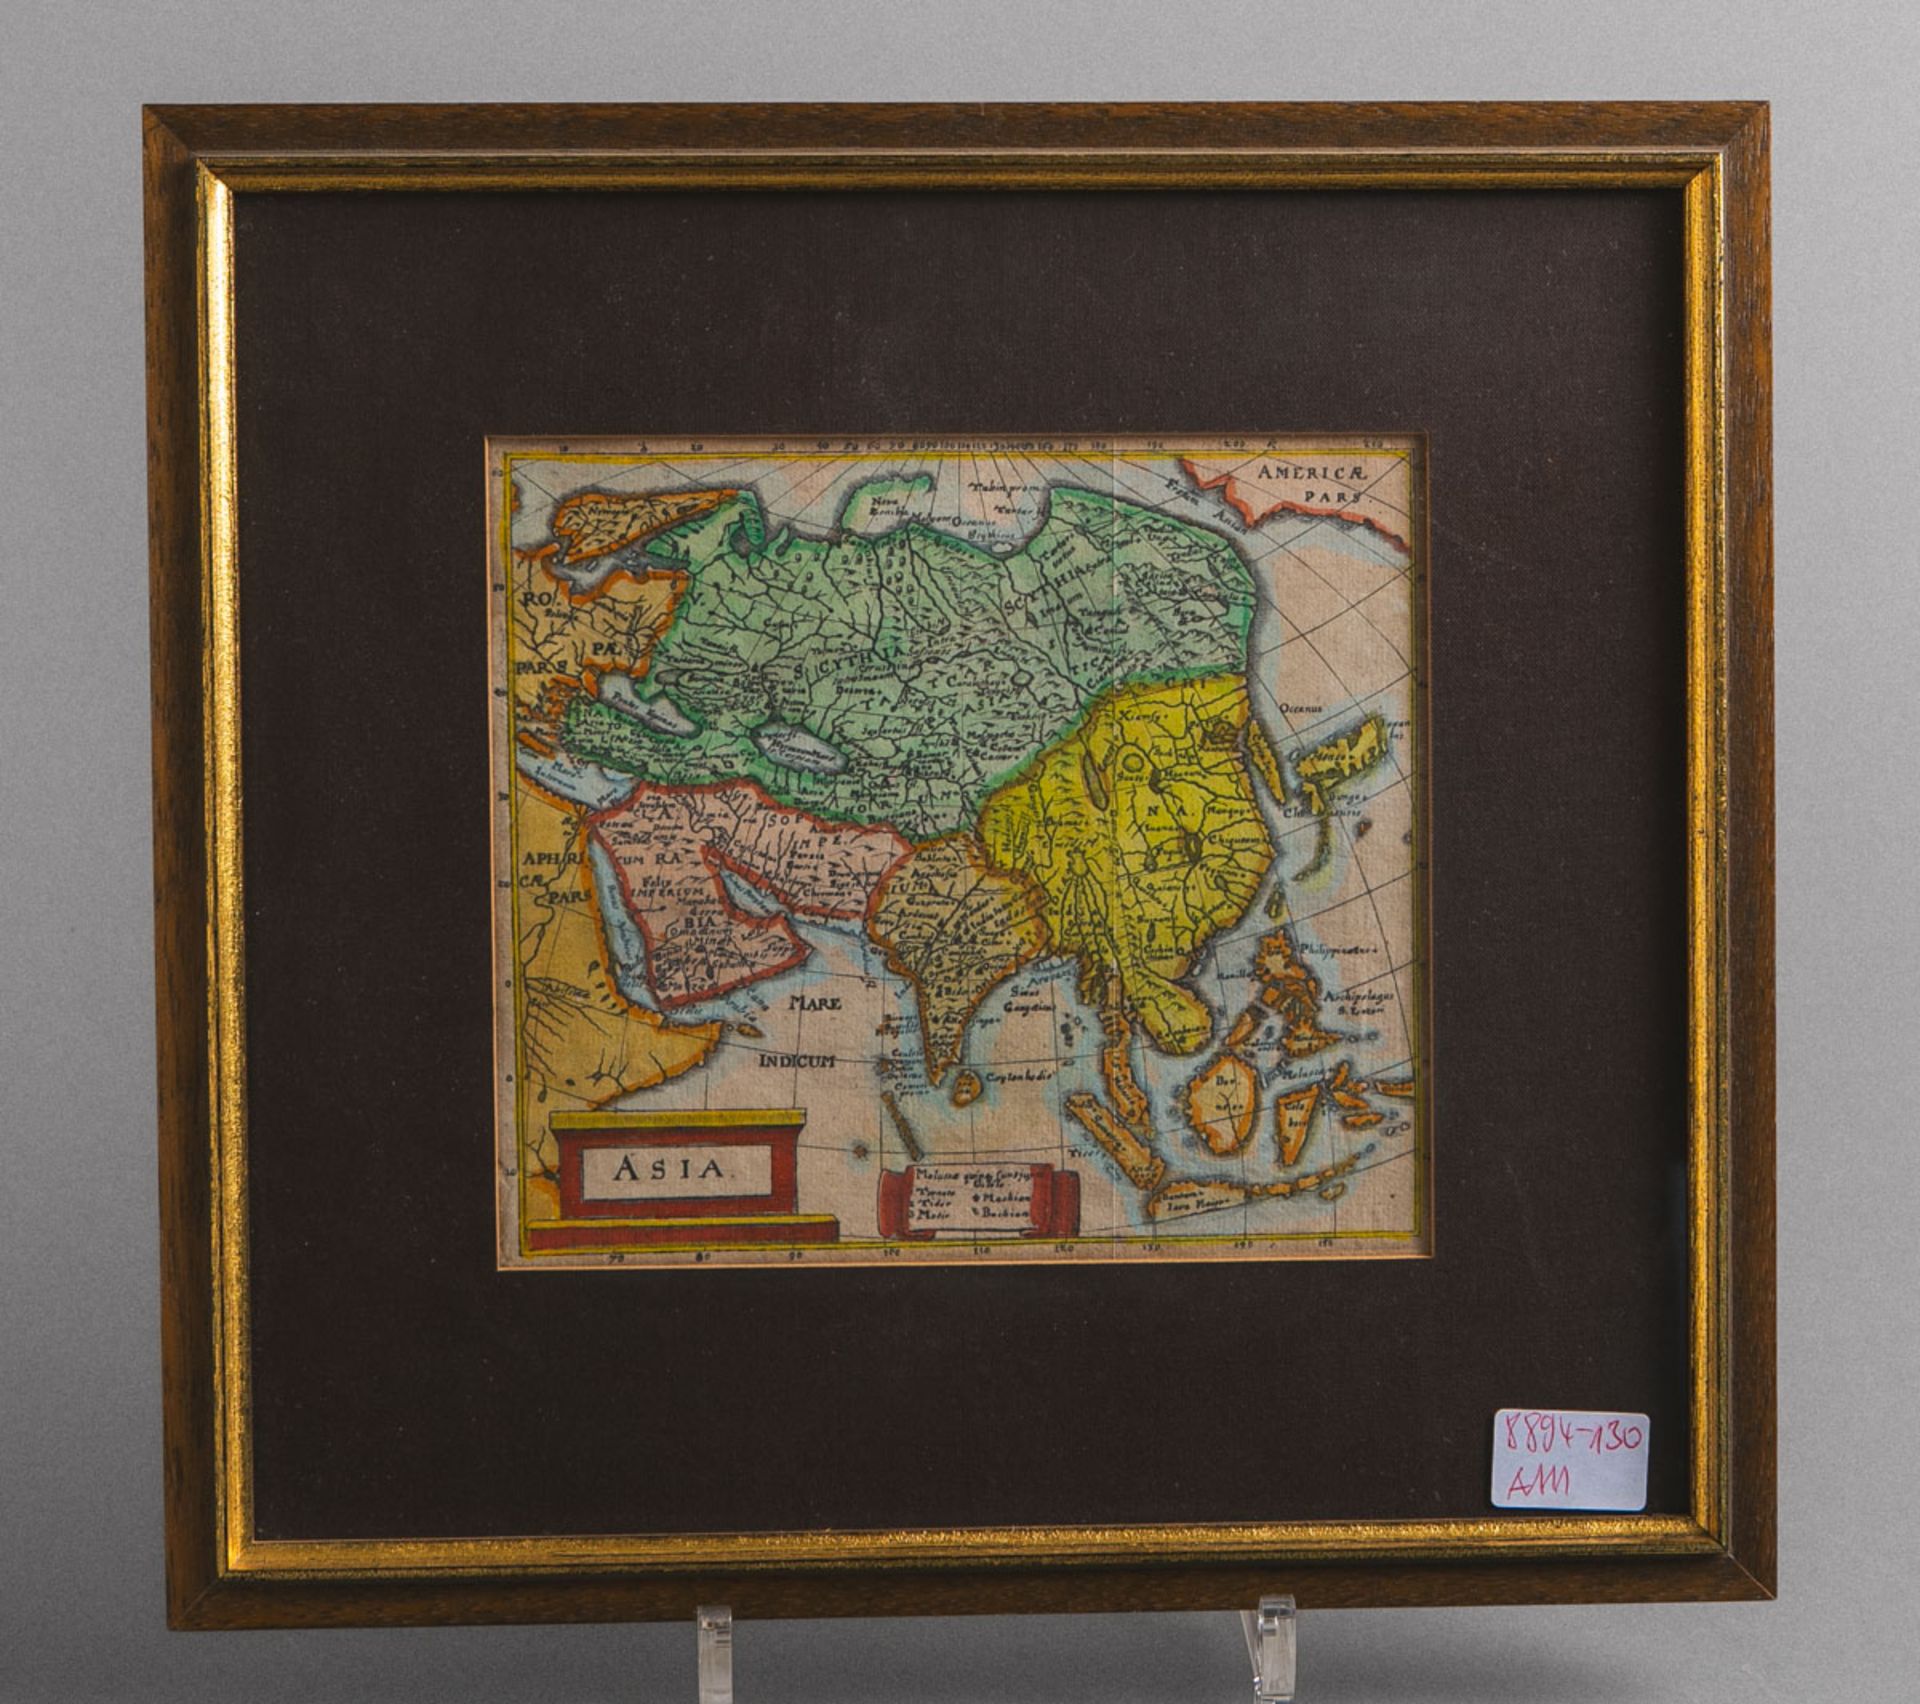 Kolorierter Kupferstich "Asia" (um 1652)